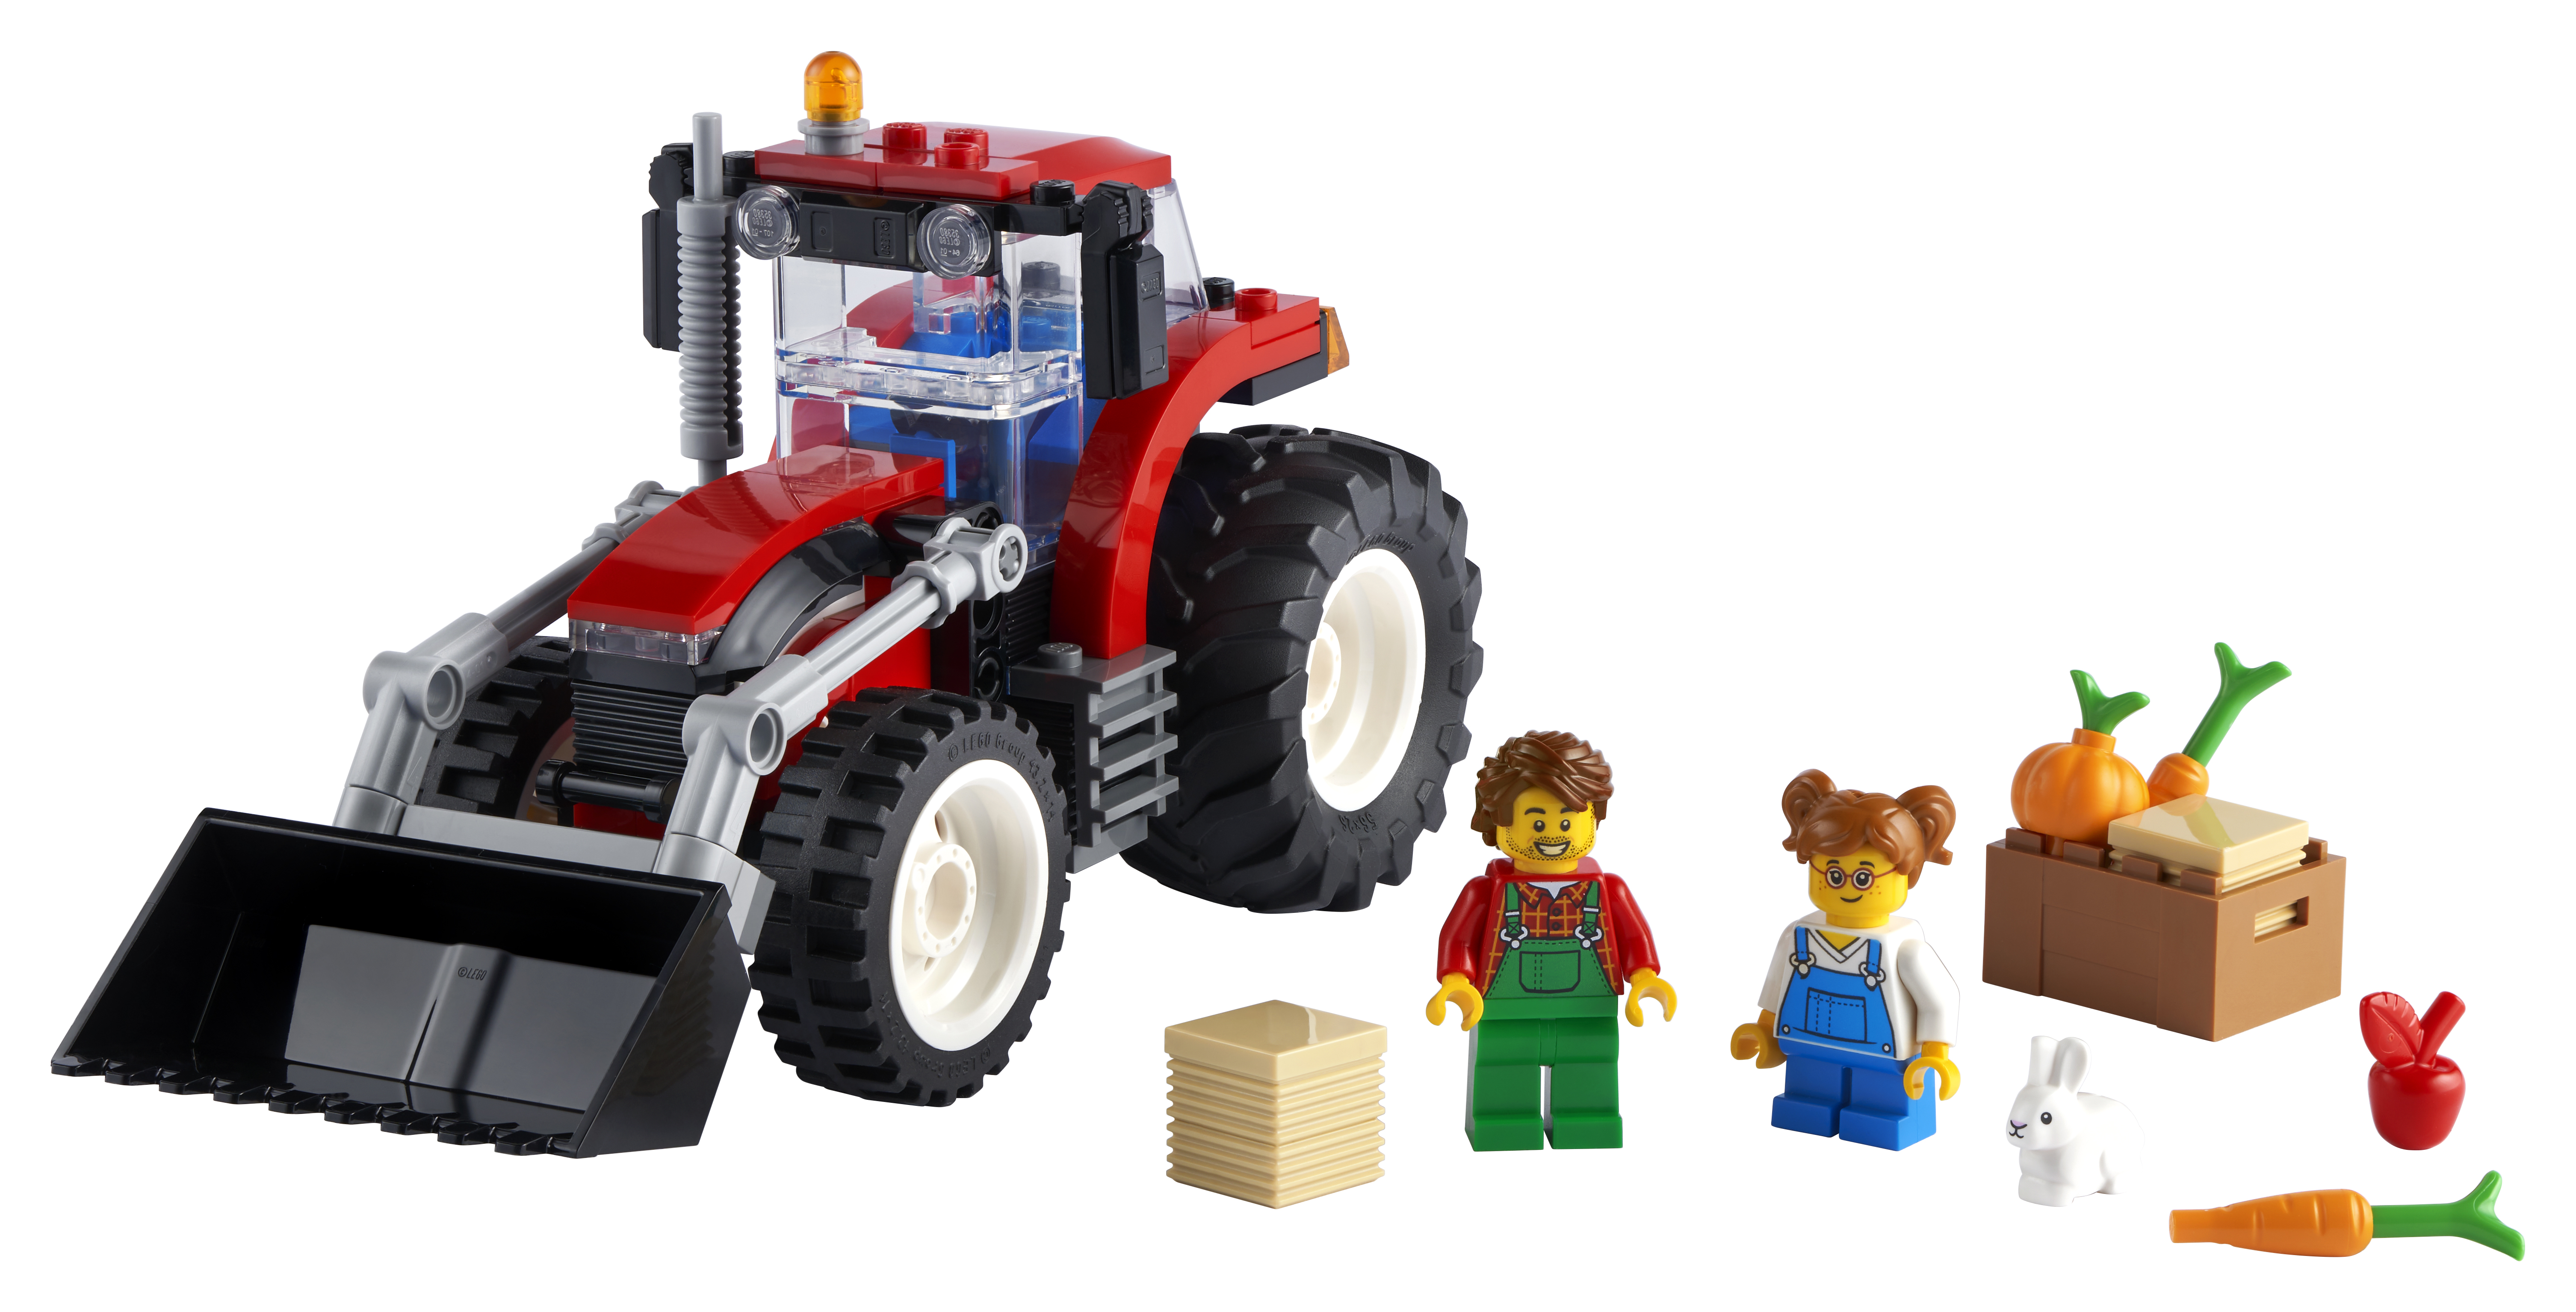  City Traktor - 60287